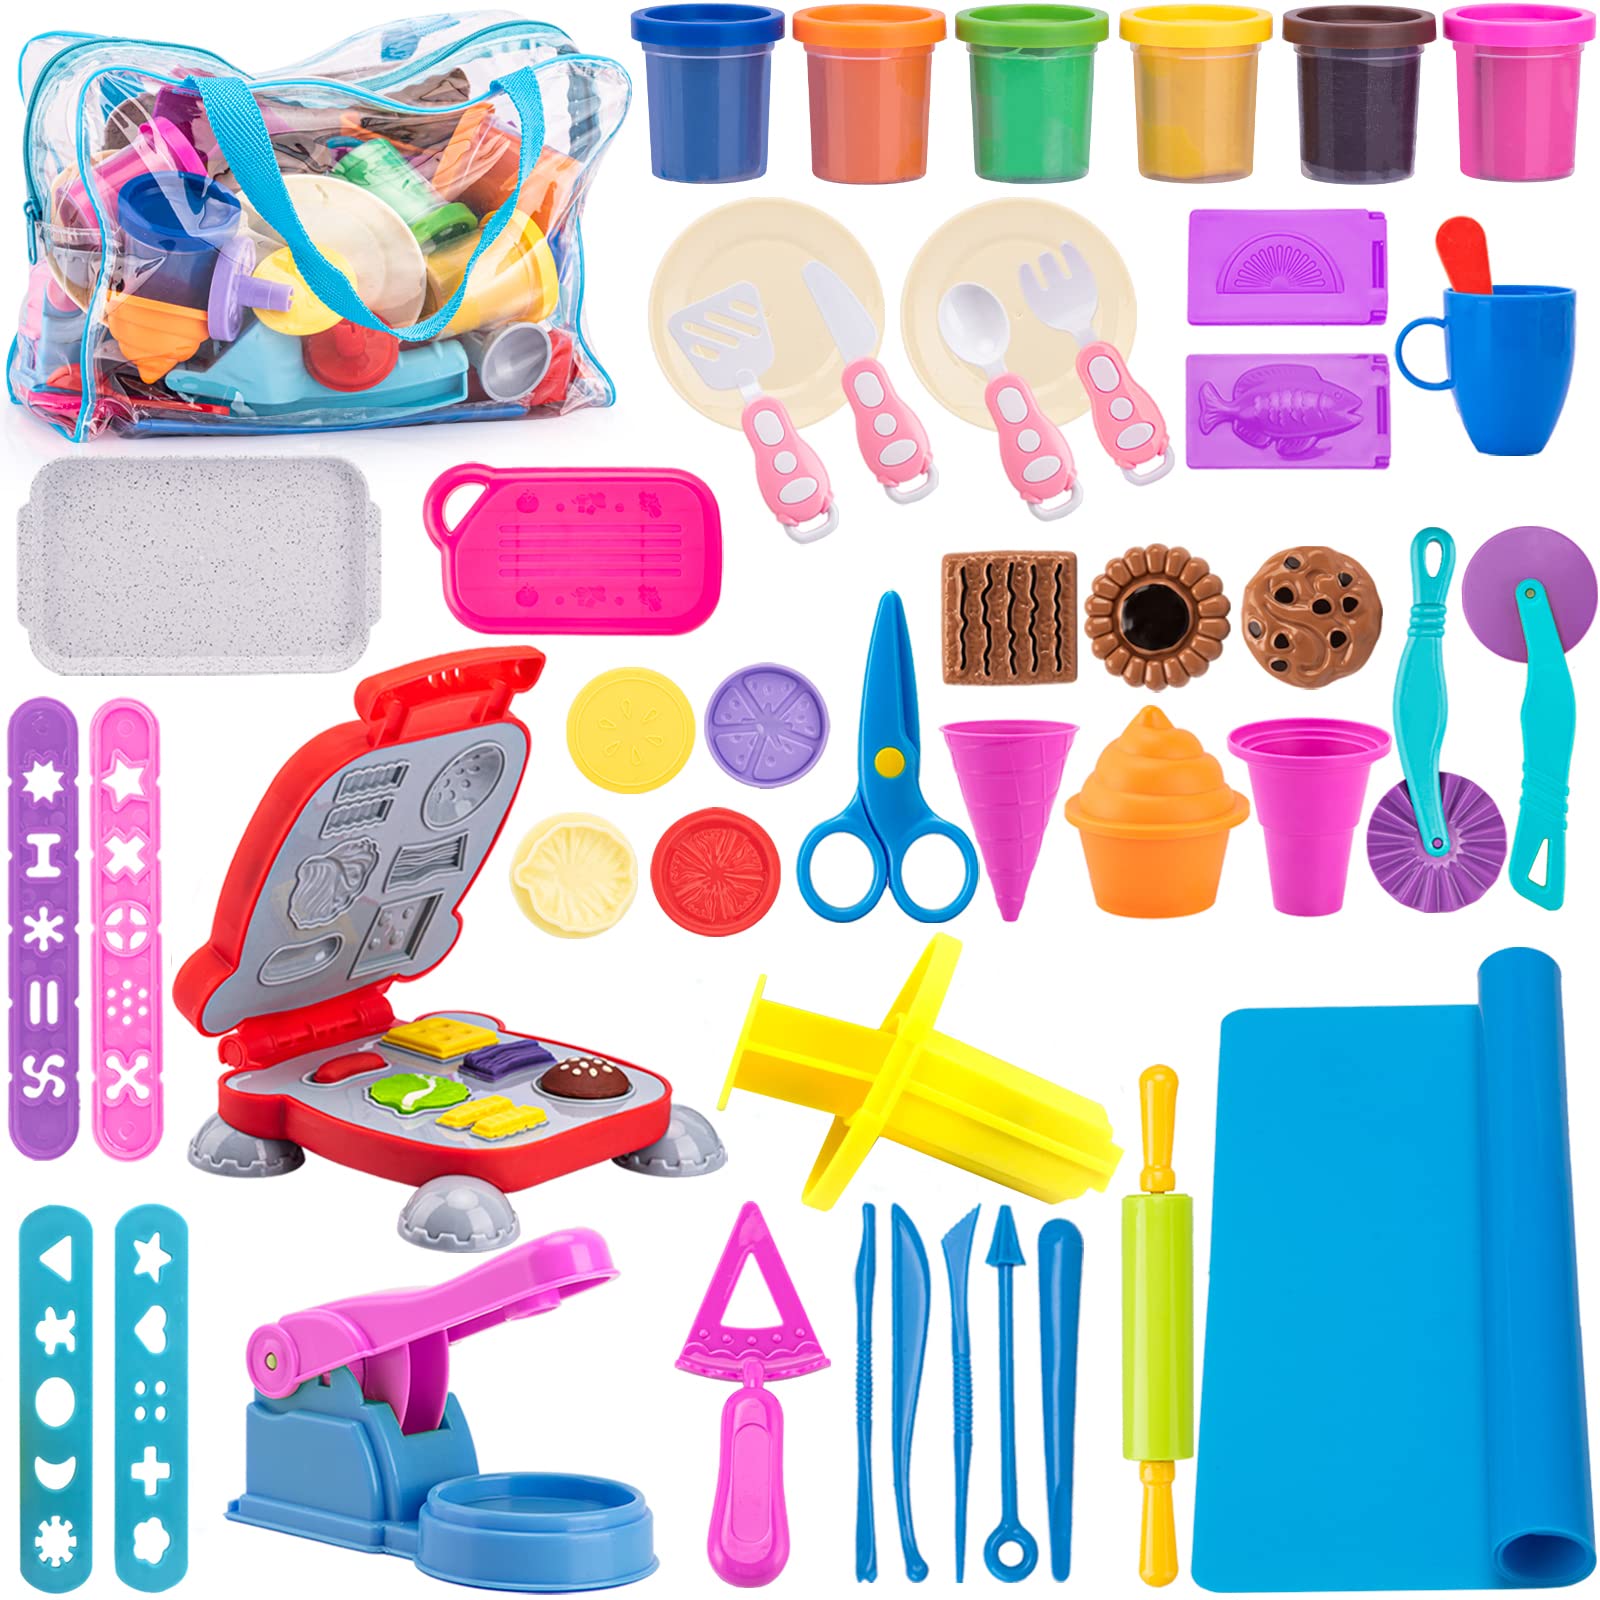 Knetwerkzeug für Kinder, 48 Stück Knete Zubehör inklusive 6er Pack Grundfarben Knete, Creation Burger & Pizzaformen, Extruderwerkzeu, Nudelholz, Spielmatten mit Aufbewahrungstasche